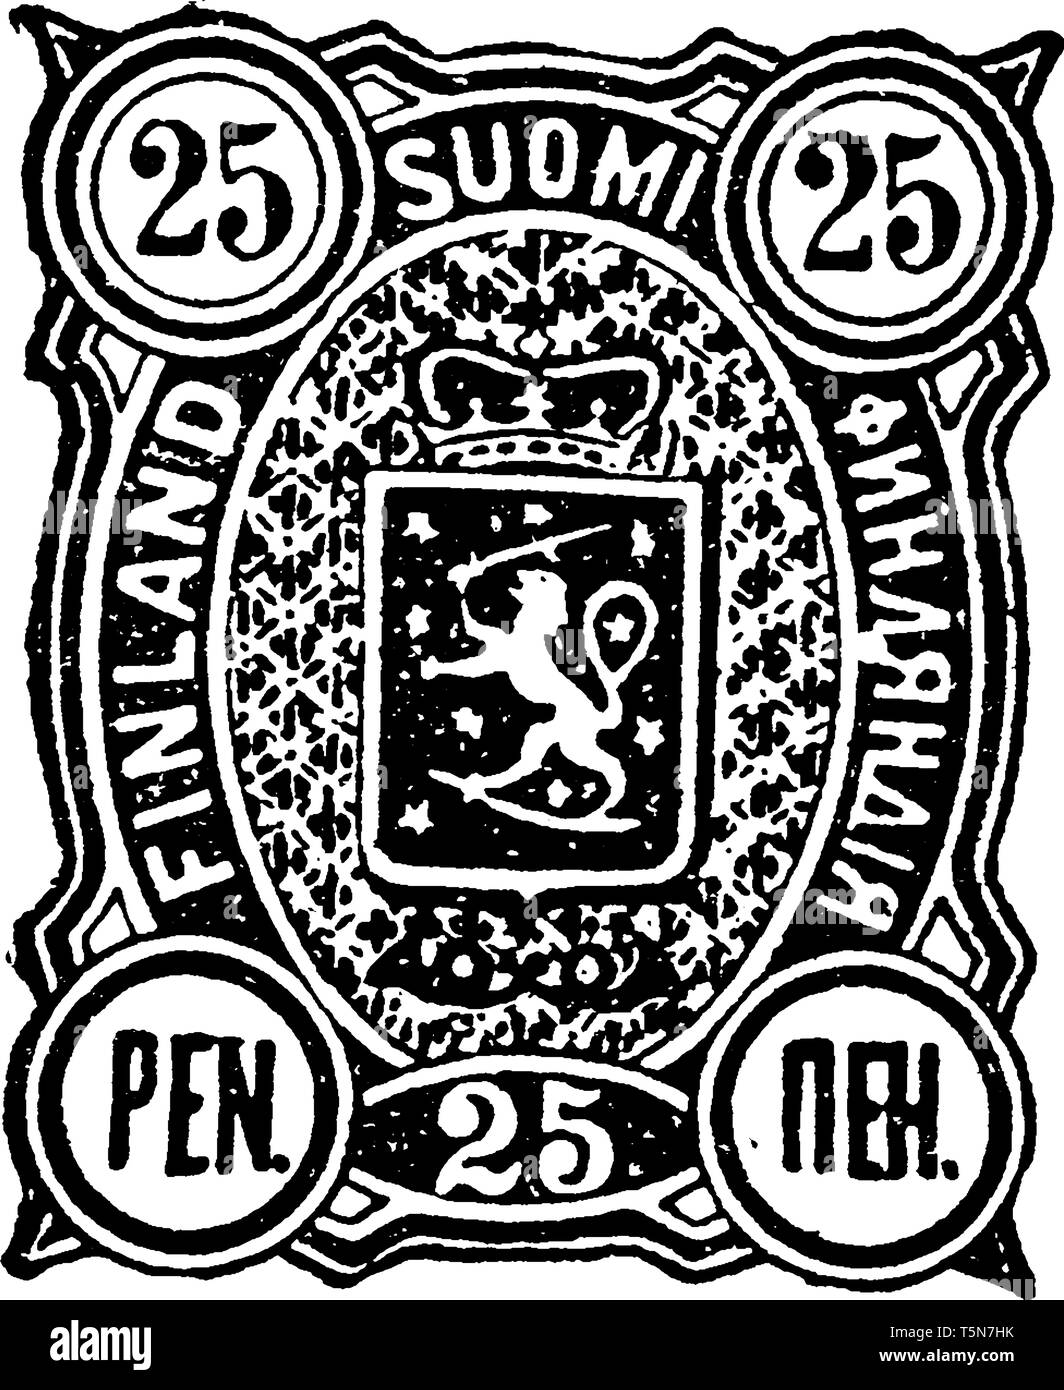 Finlande 25 timbres de plume en 1890 Question de trois timbres de première classe finlandais dessiné par et de célébrer le travail de l'artiste finlandais Tom of Finland, vintage lin Illustration de Vecteur